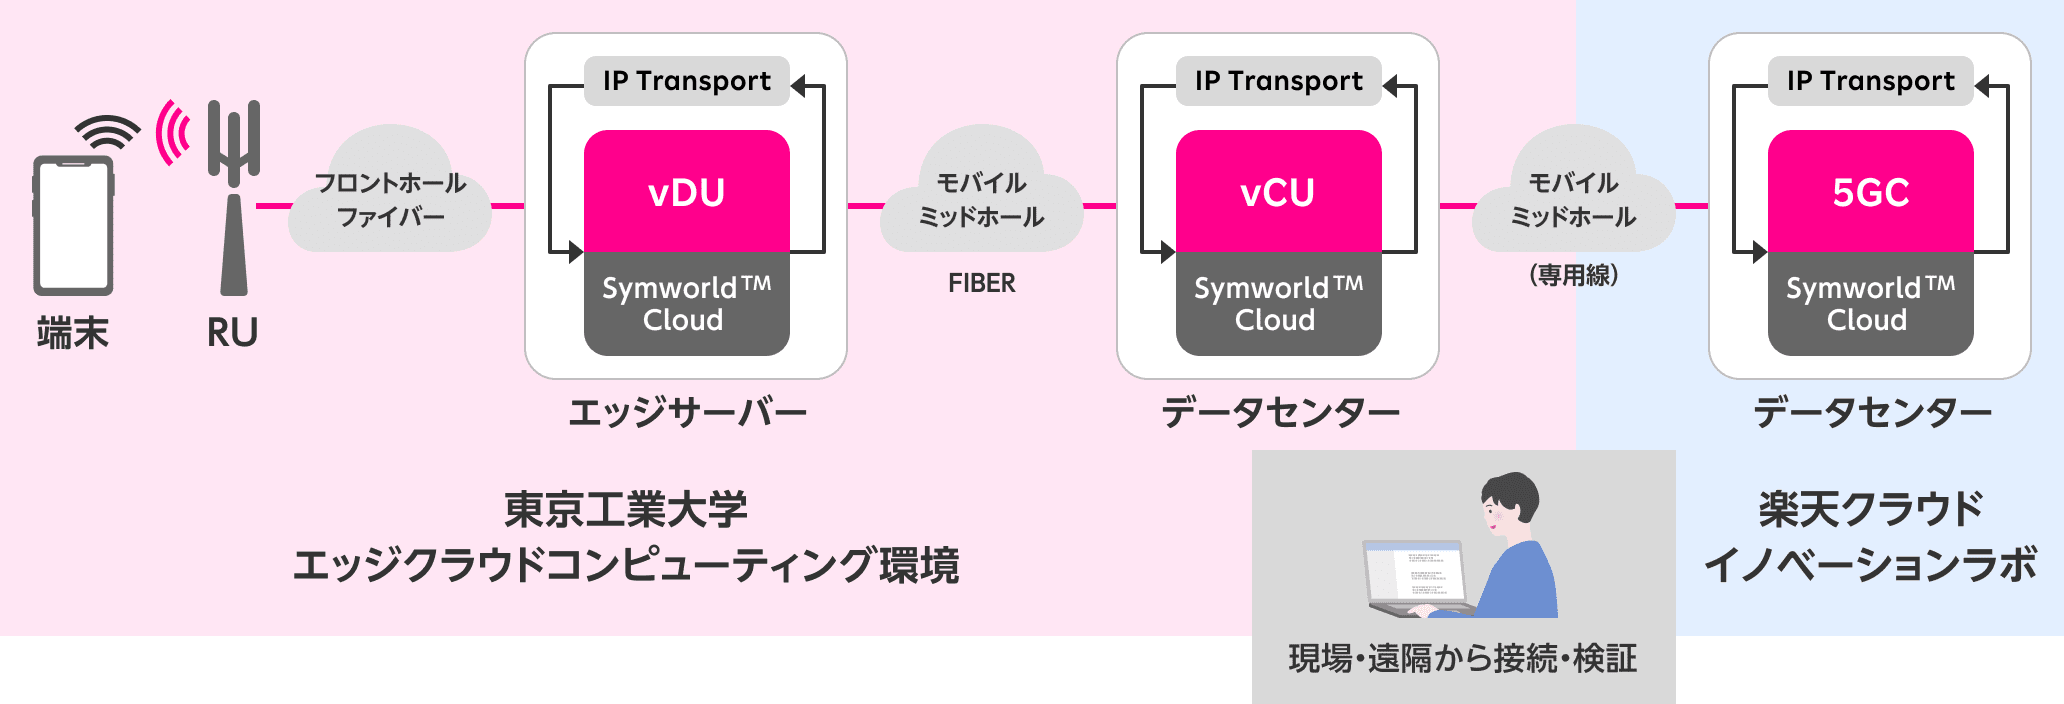 端末、RU、フロントホールファイバー、エッジサーバー（IP Transport、vDU、Symworld TM Cloud）、モバイルミッドホール、FIBER、データセンター（IP Transport、vCU、Symworld TM Cloud）、モバイルミッドホール（専用線）、データセンター（IP Transport、5GC、Symworld TM Cloud）。東京工業大学エッジクラウドコンピューティング環境、楽天クラウドイノベーションラボ、現場・遠隔から接続・検証。